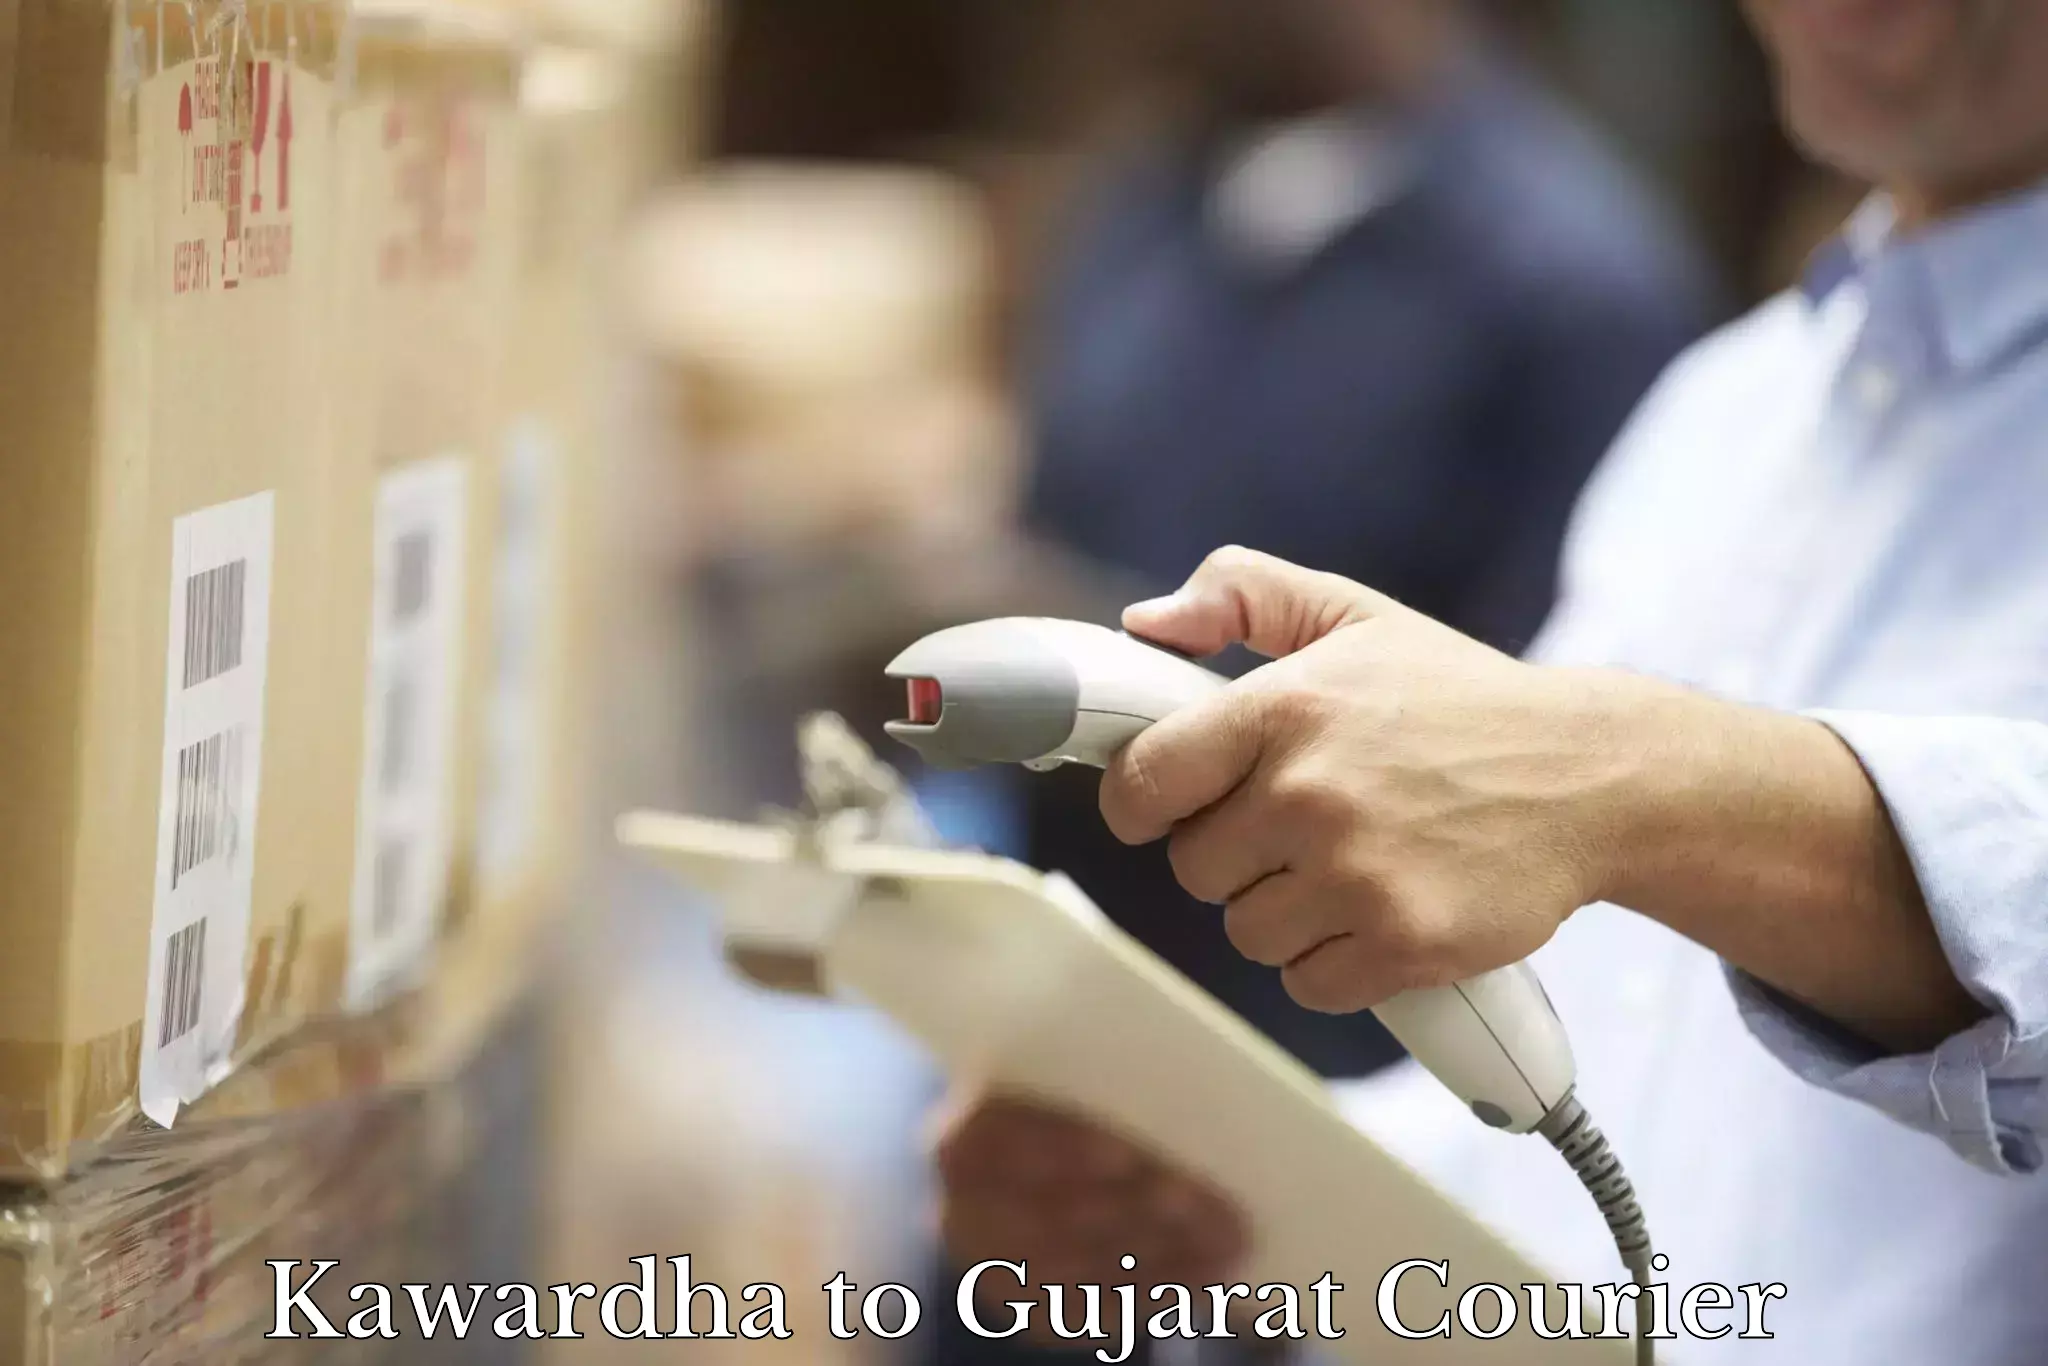 Competitive shipping rates Kawardha to Narmada Gujarat